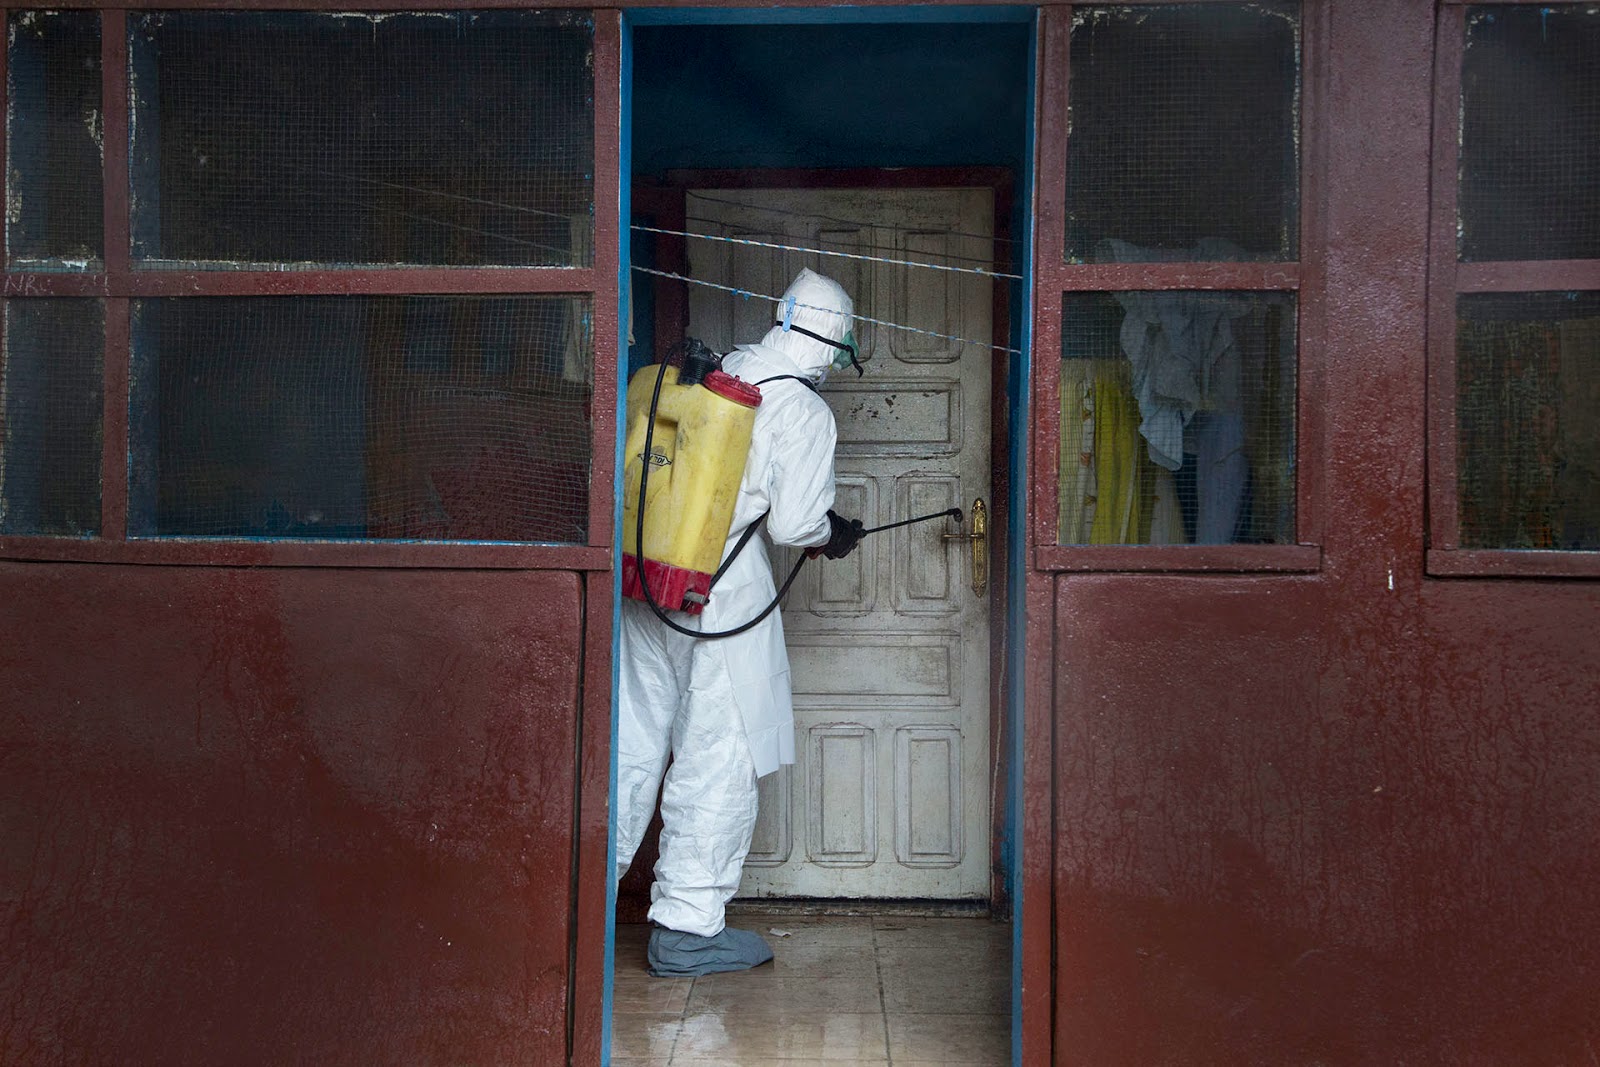 http://mashable.com/2014/10/24/ebola-liberia-hell-photographer/?utm_cid=mash-com-Tw-main-link